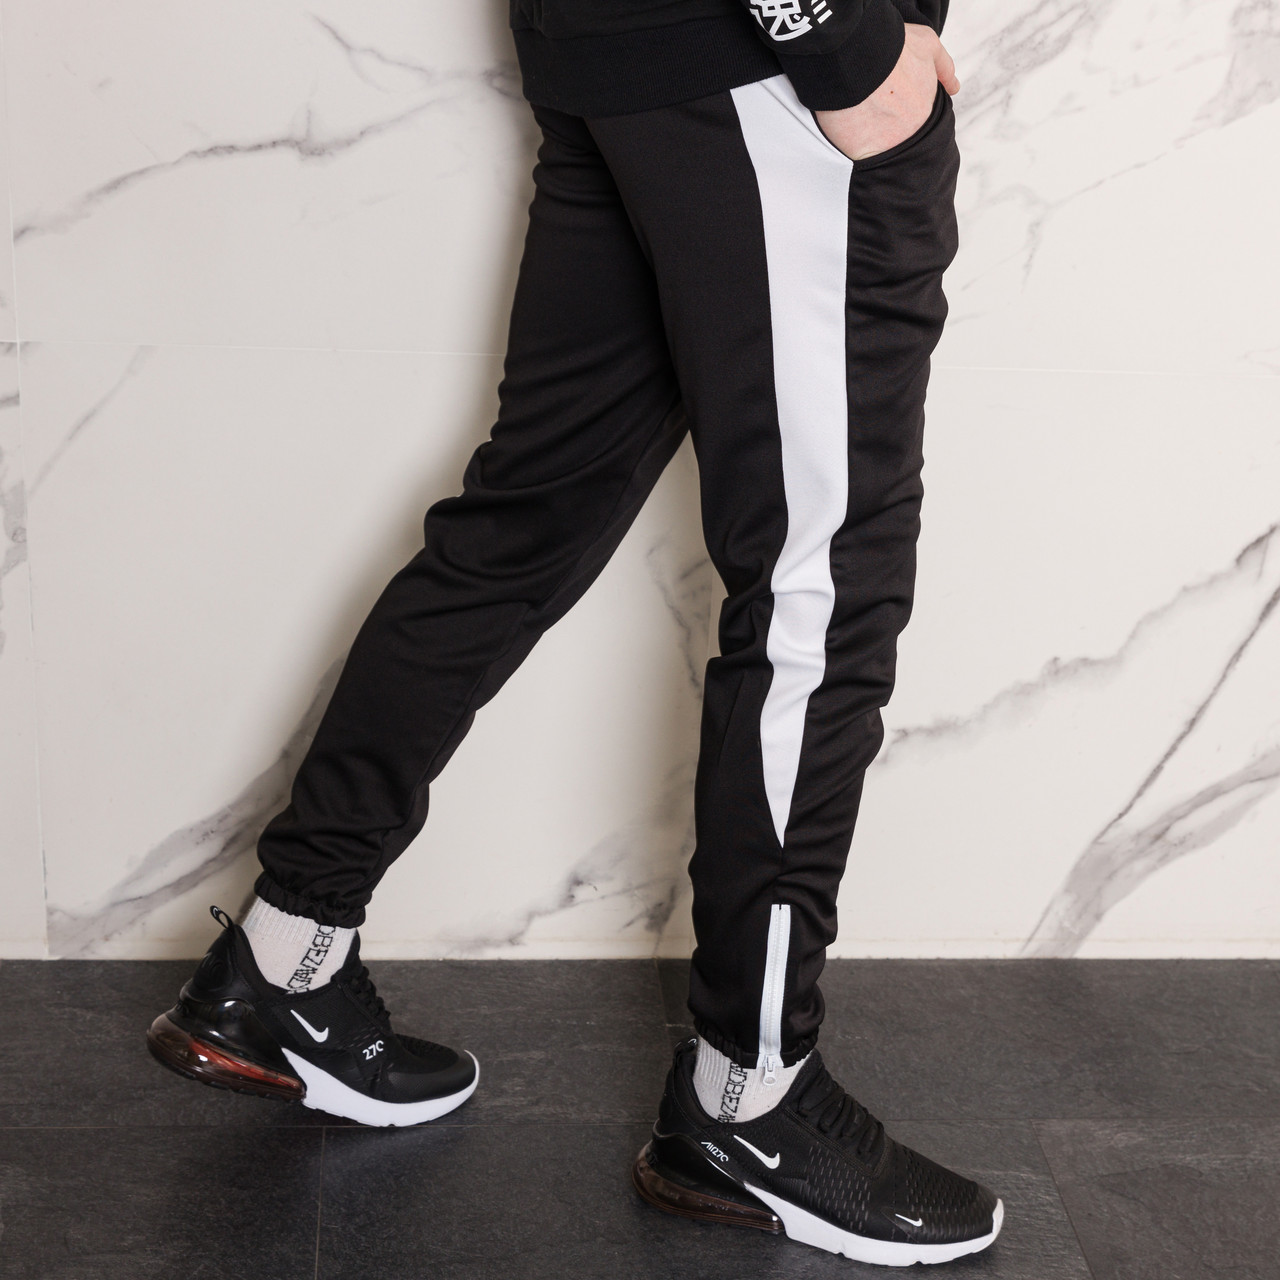 Спортивні чорні штани з білим лампасом чоловічі бренд ТУР модель Роккі (Rocky) TURWEAR - Фото 1